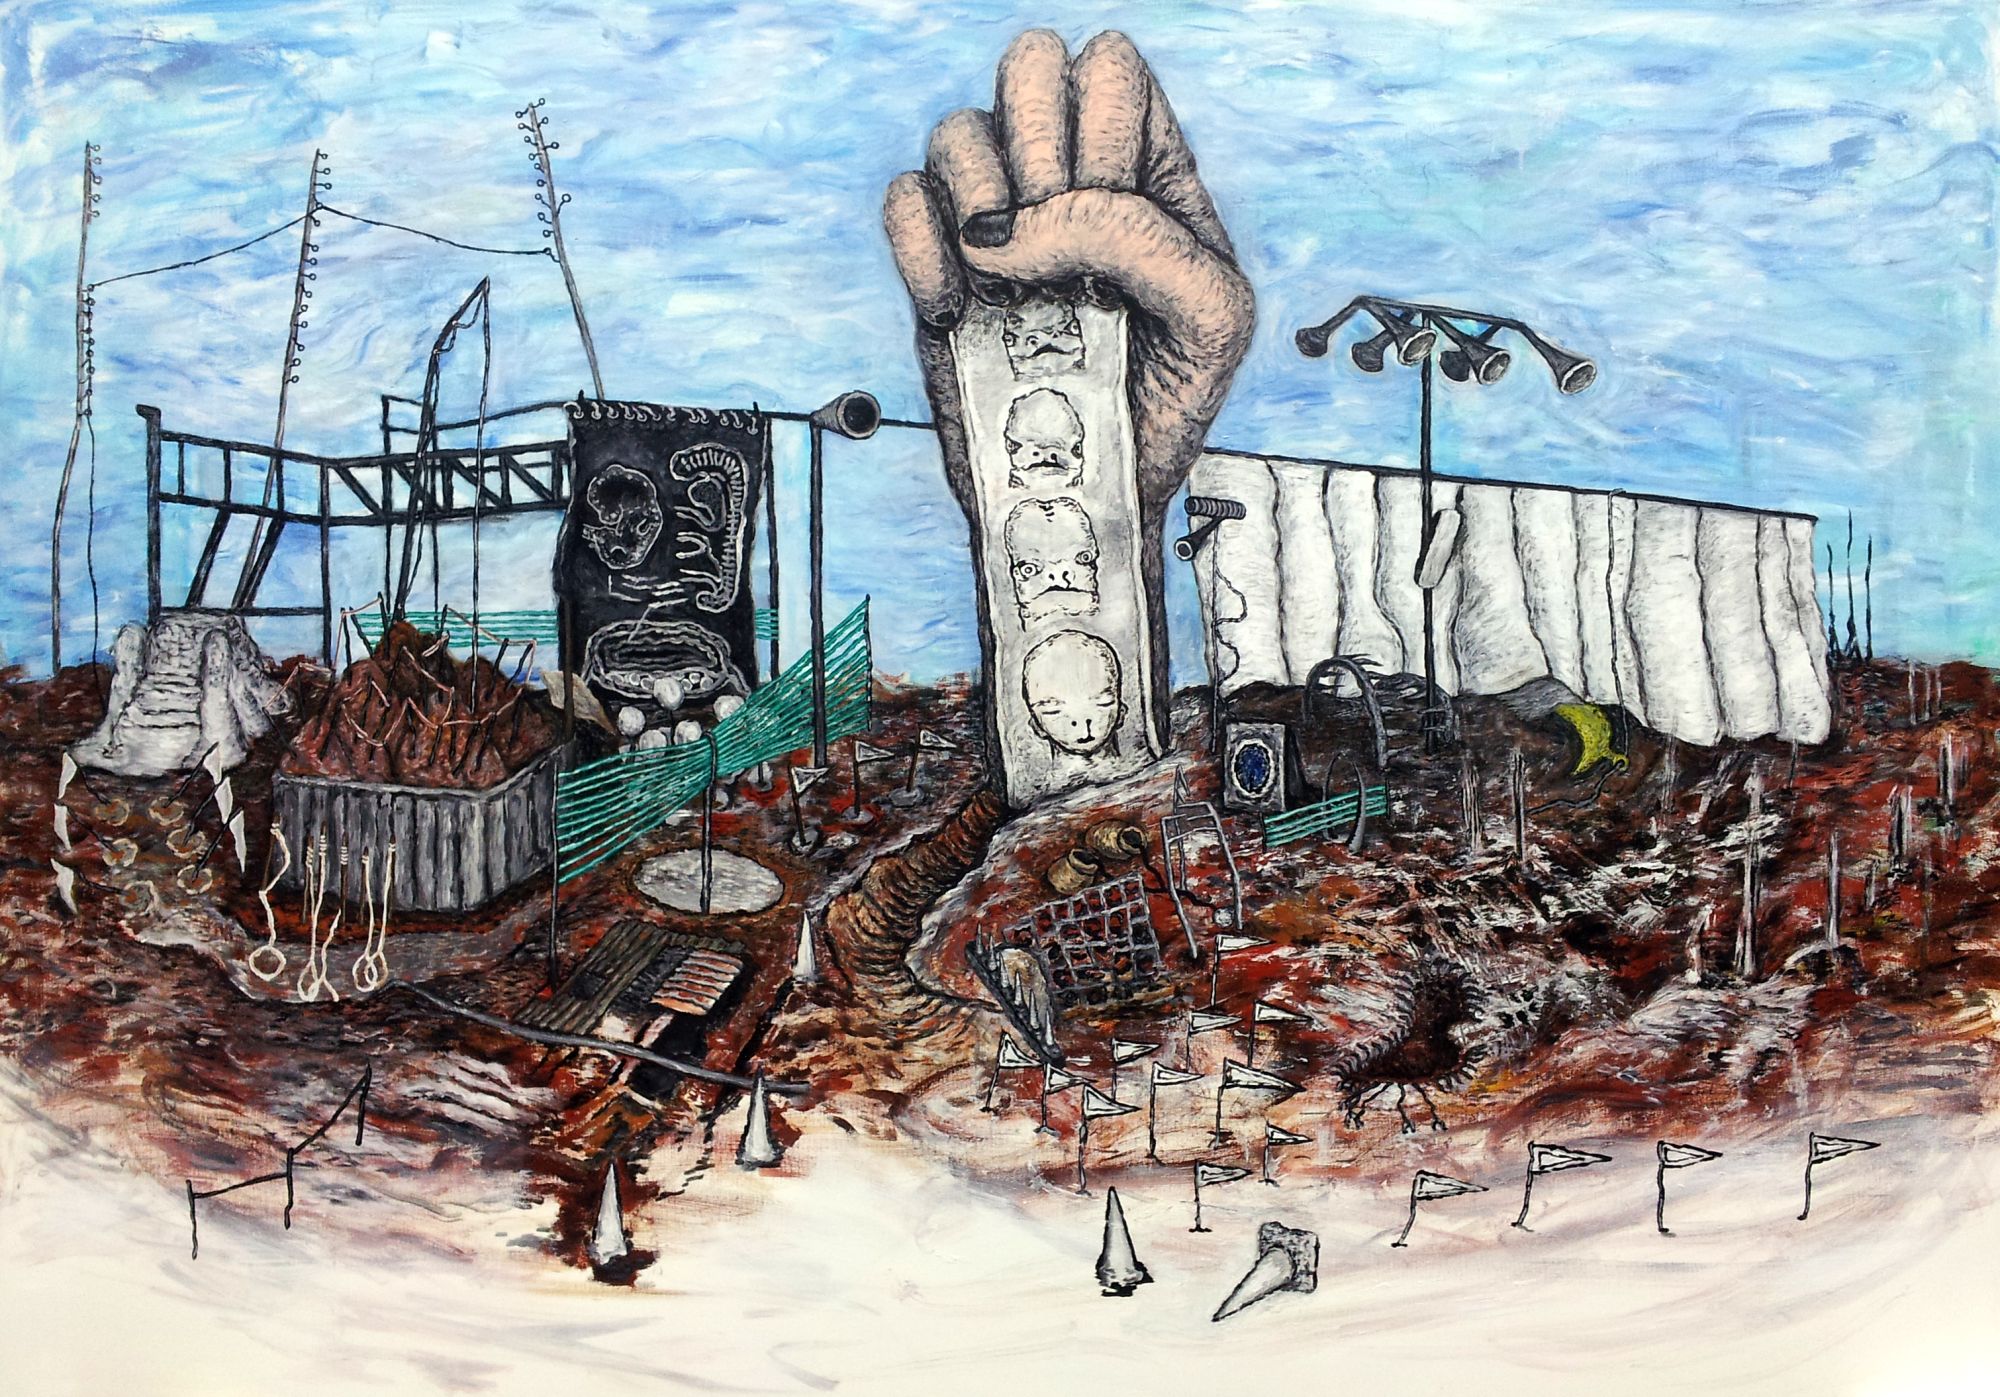 공사장-심리적 풍경, 112x162cm, acrylic on canvas, 2011